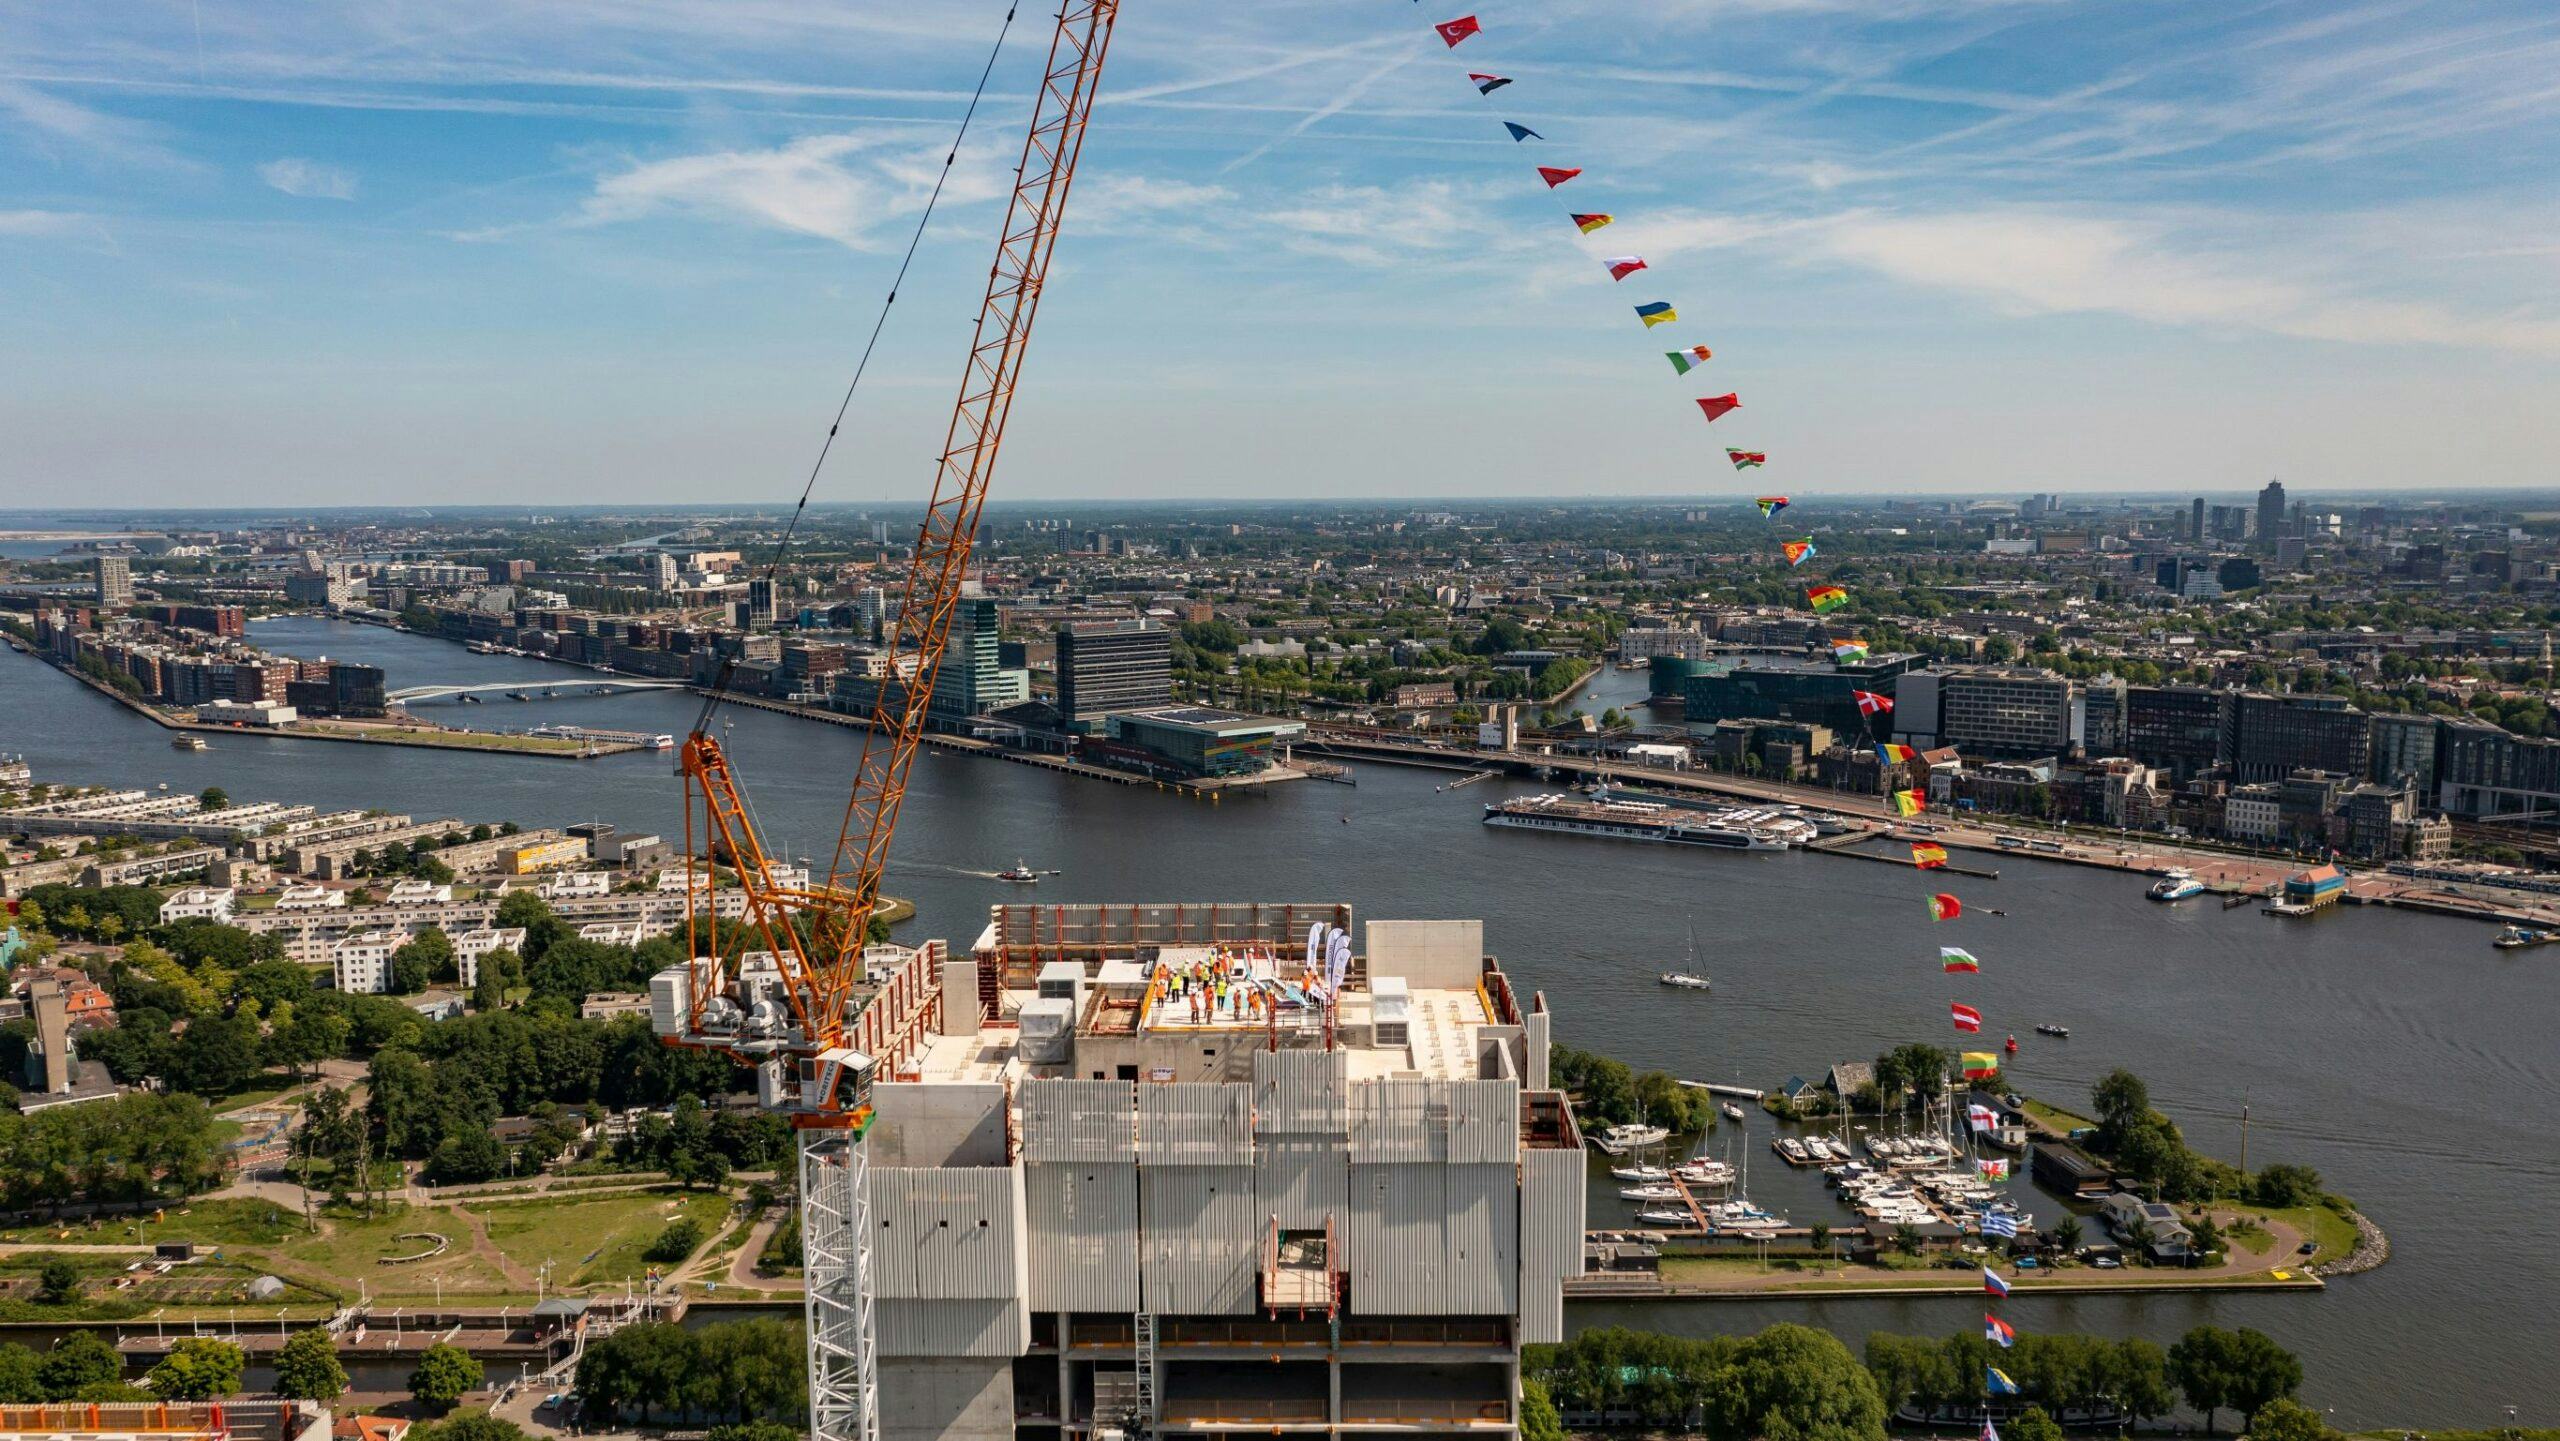 De 34 vlaggen die werden gehesen bij het bereiken van het hoogste punt van Maritim Hotel Amsterdam symboliseren de 34 nationaliteiten die betrokken zijn bij de bouw van het megahotel.